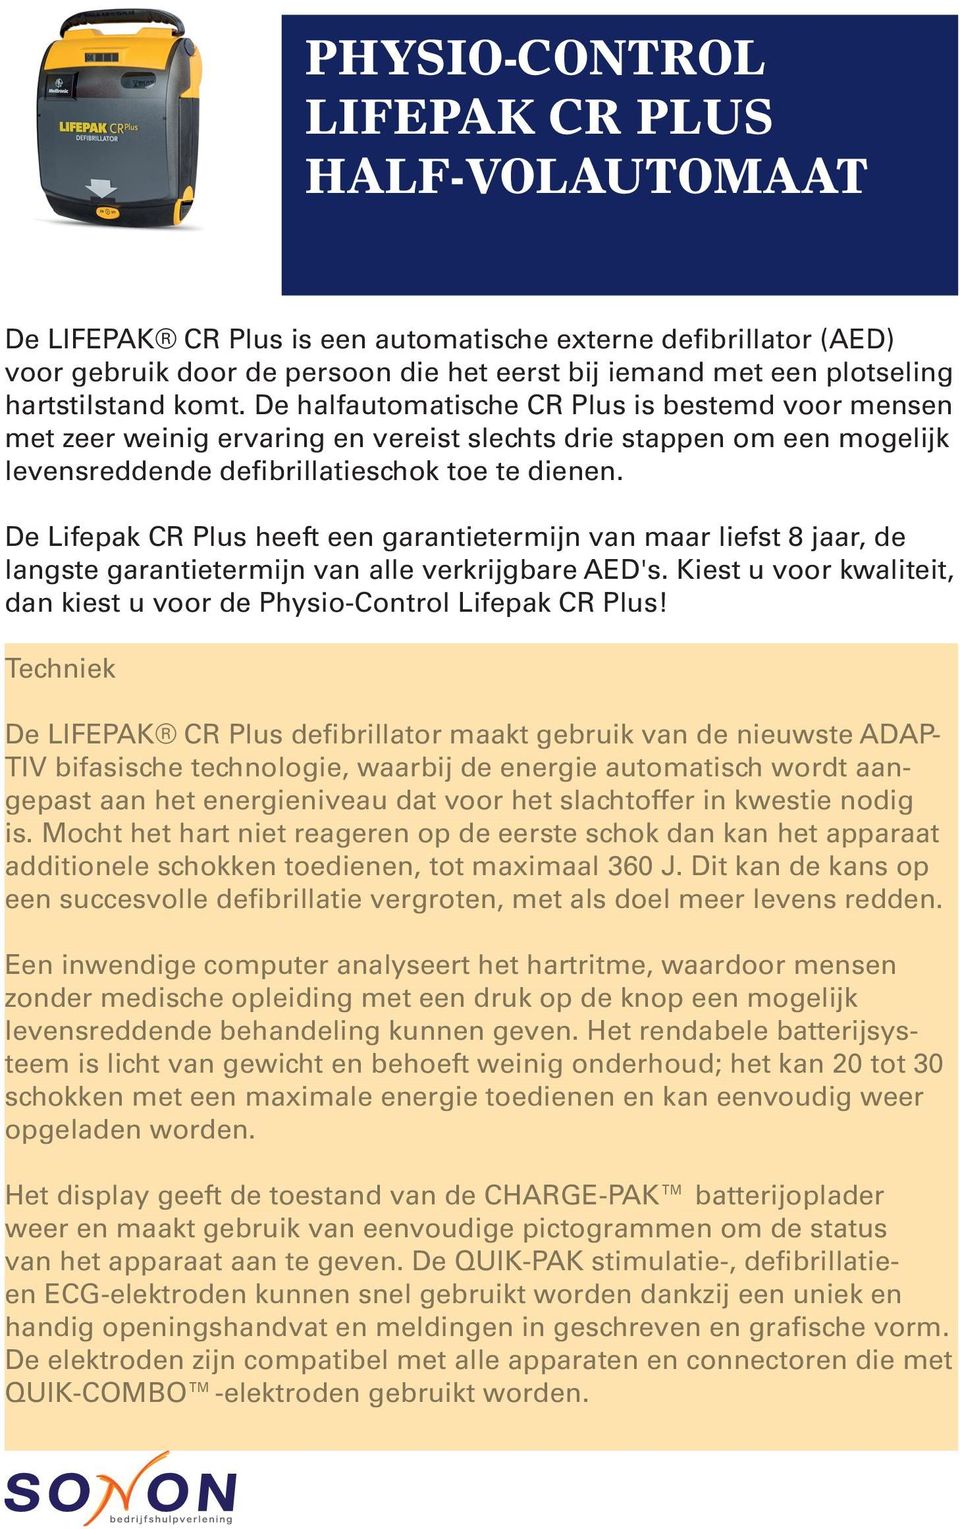 De Lifepak CR Plus heeft een garantietermijn van maar liefst 8 jaar, de langste garantietermijn van alle verkrijgbare AED's. Kiest u voor kwaliteit, dan kiest u voor de Physio-Control Lifepak CR Plus!